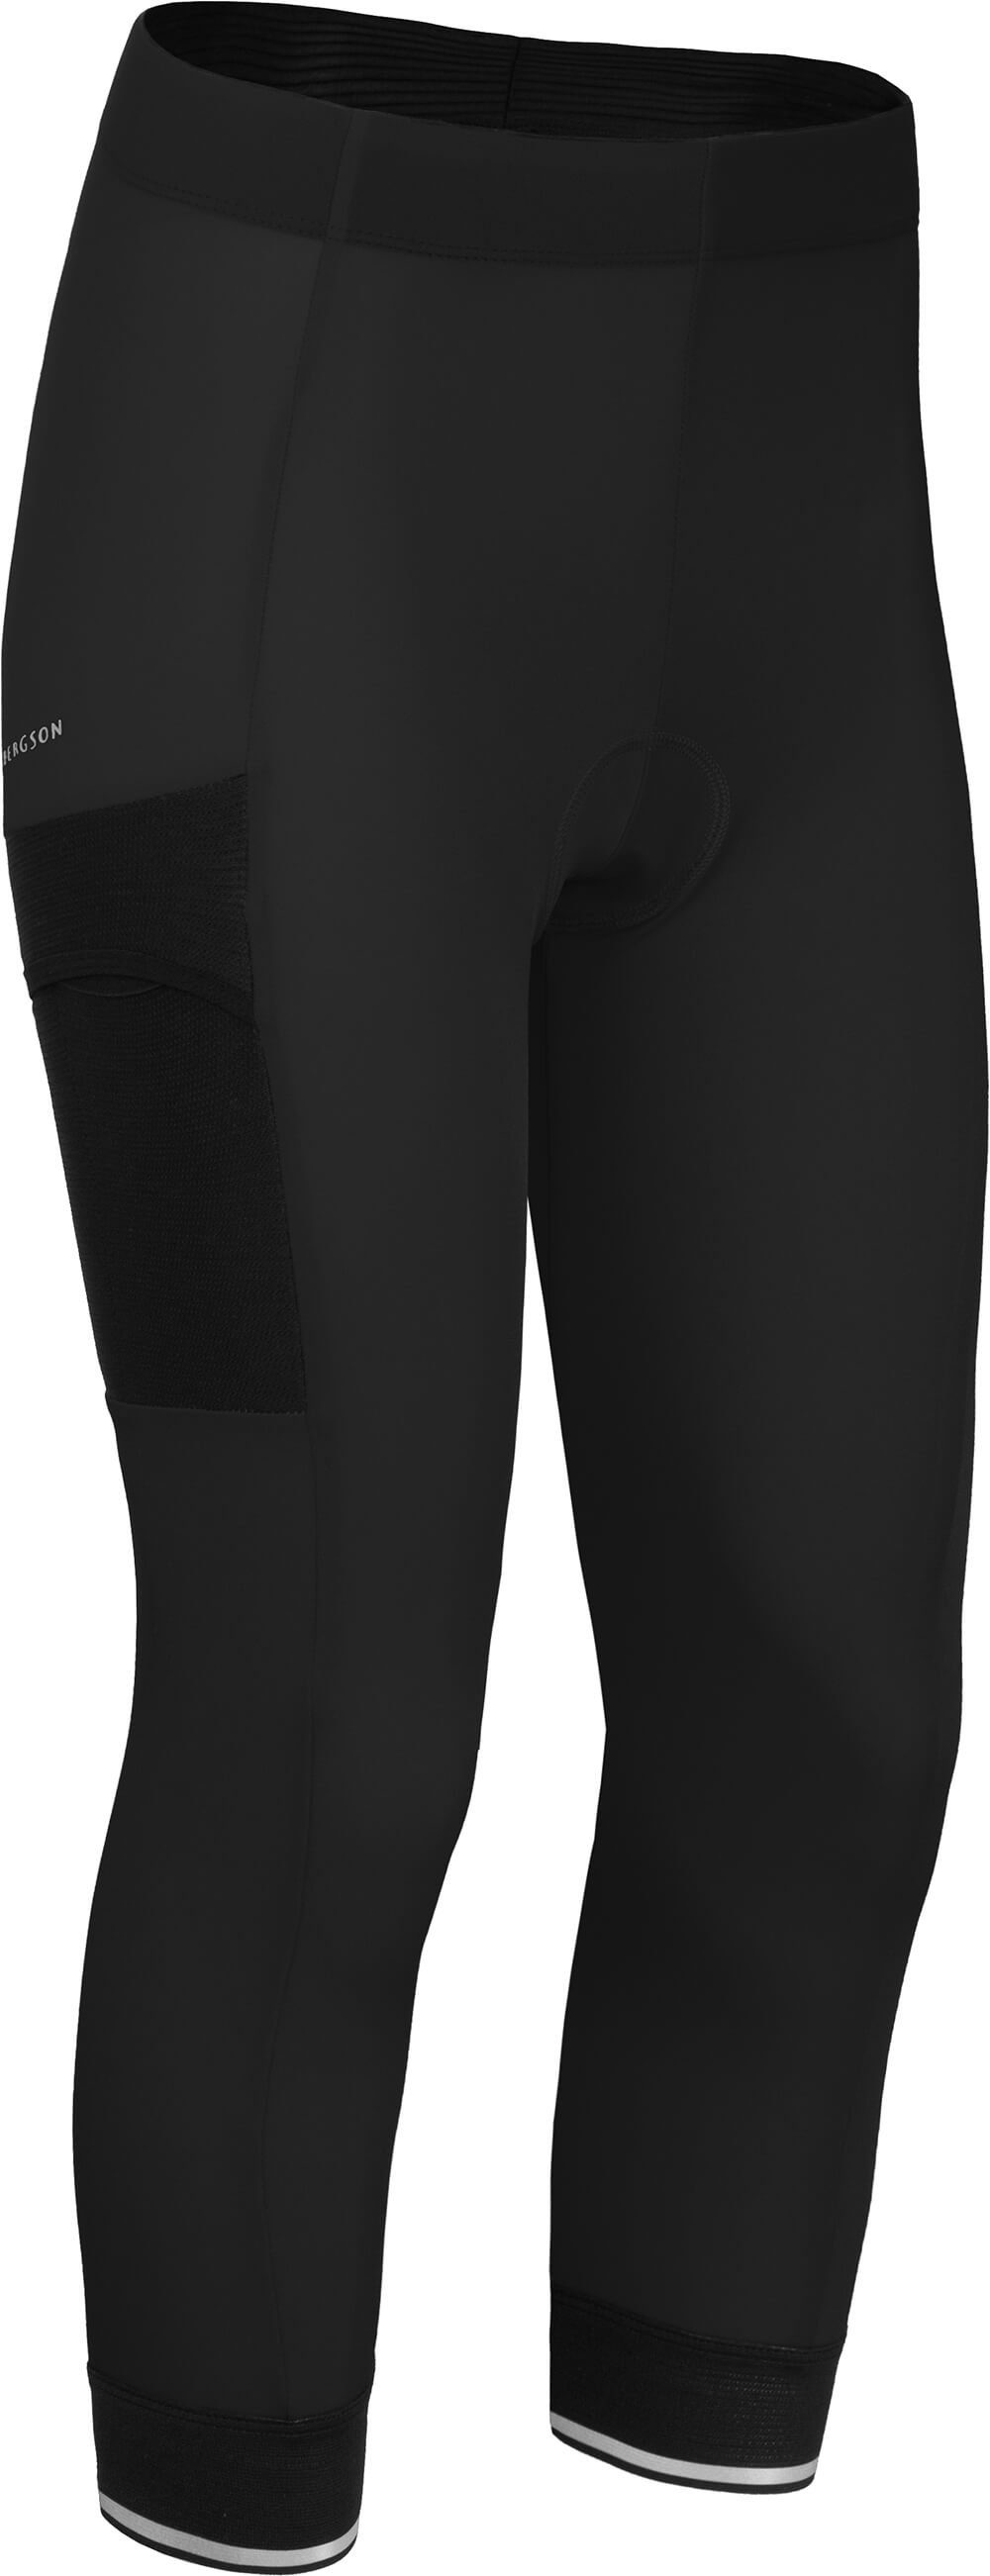 Capri schwarz tight, COMFORT (mit Fahrradhose SUNDRA Normalgrößen, 3/4 Radhose, bielastisch, Sitzpolster) Bergson Damen